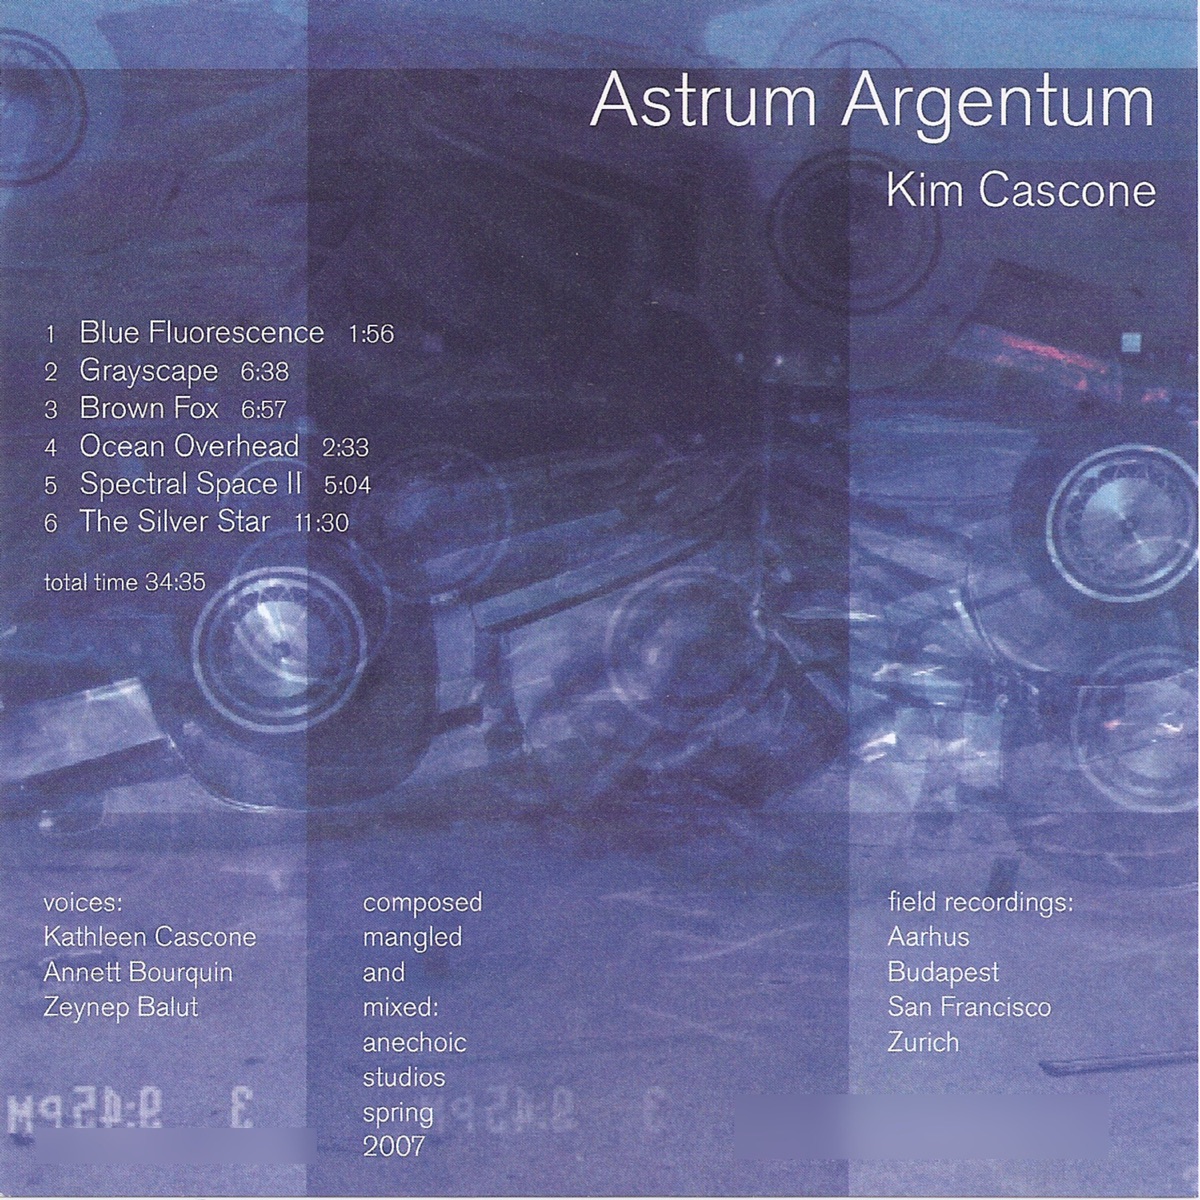 Astrum Argentum - Album by Kim Cascone - Apple Music